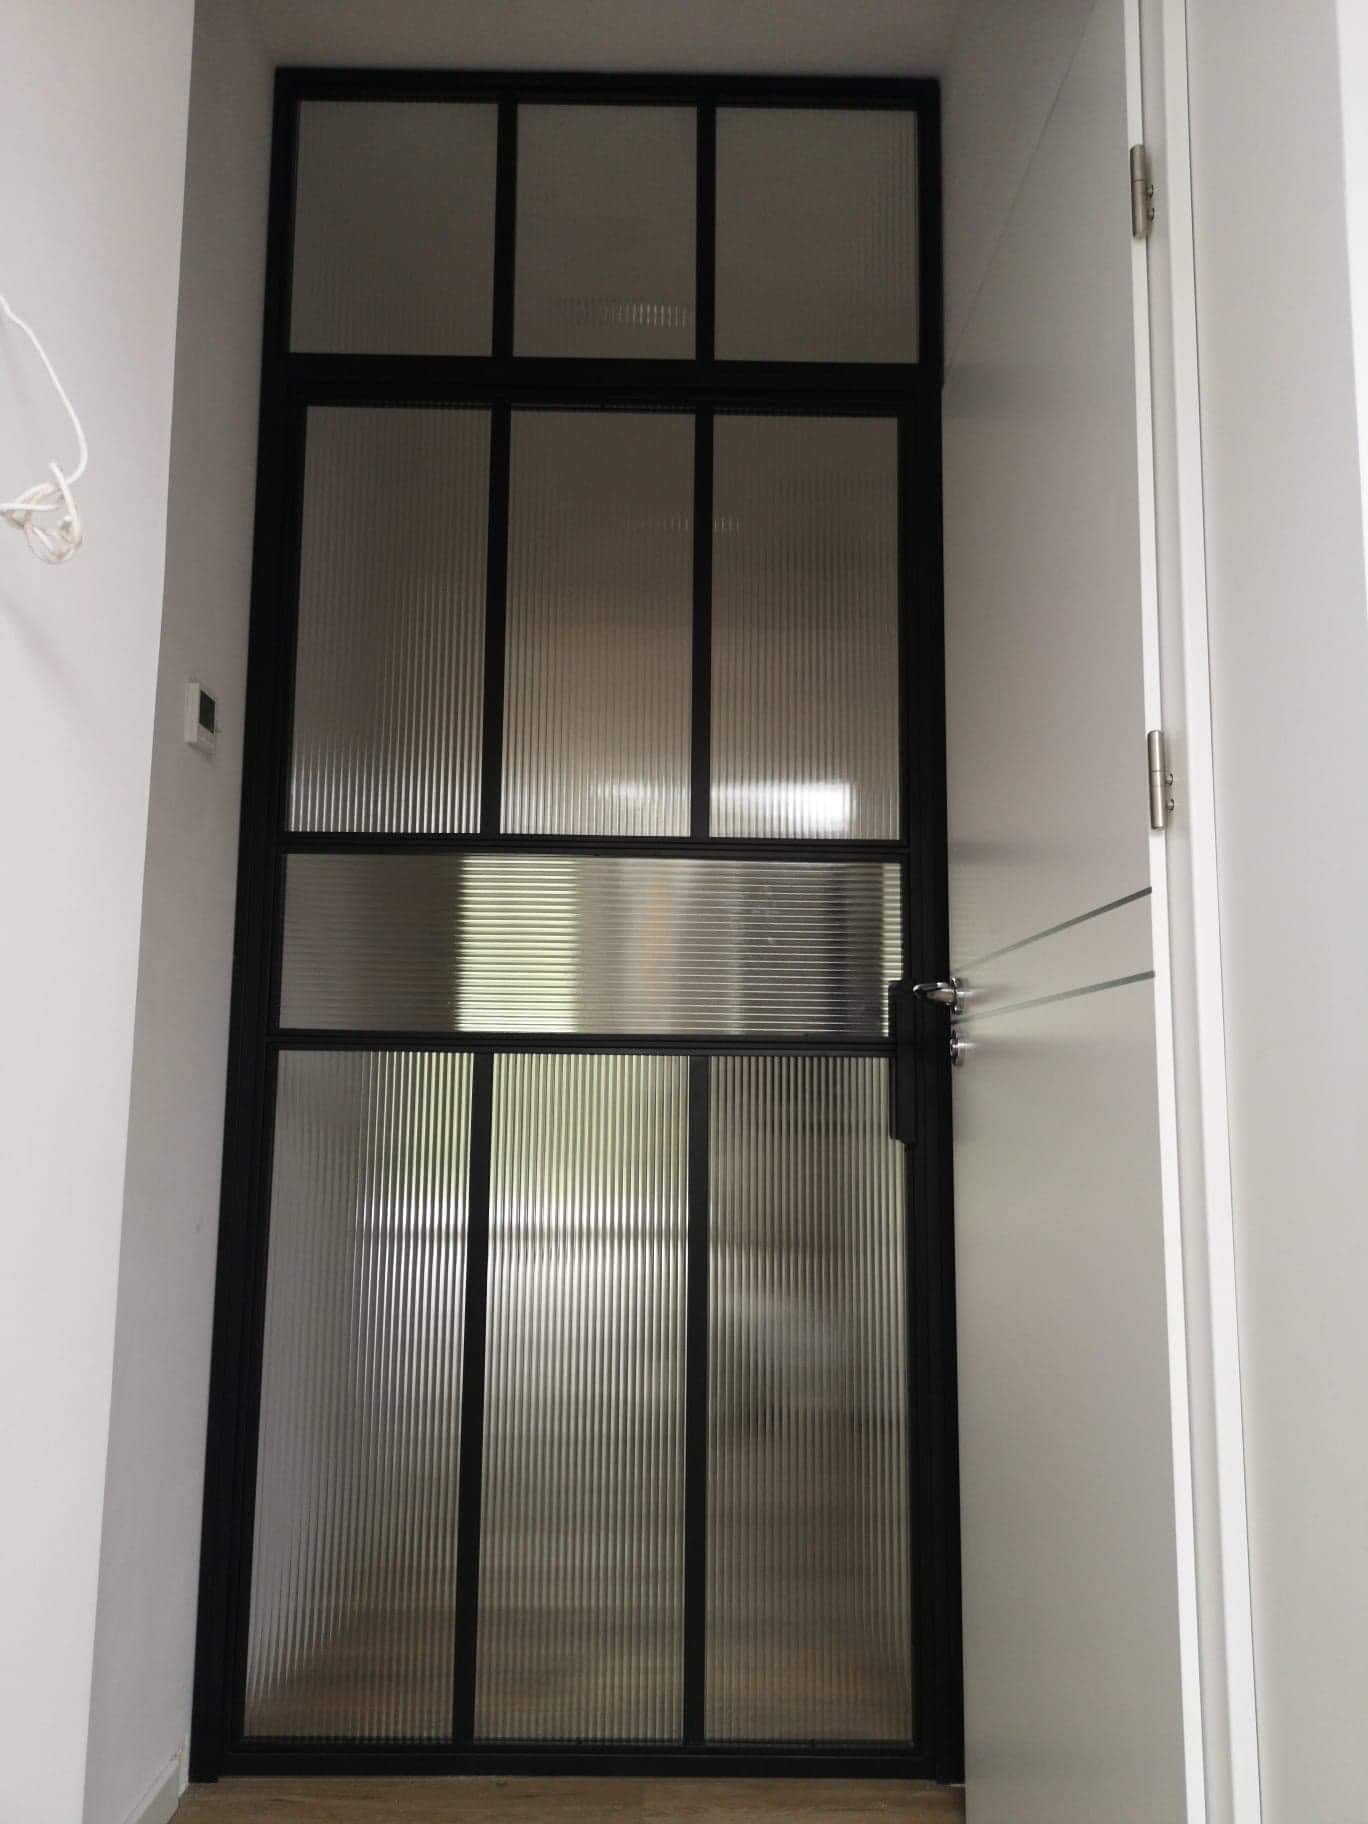 Ścianka przeszklona indsutrialna ściana szklana metalowa z drzwiami uchylnymi drzwi  LOFT Loftowe Ewa K. | Gdańsk 